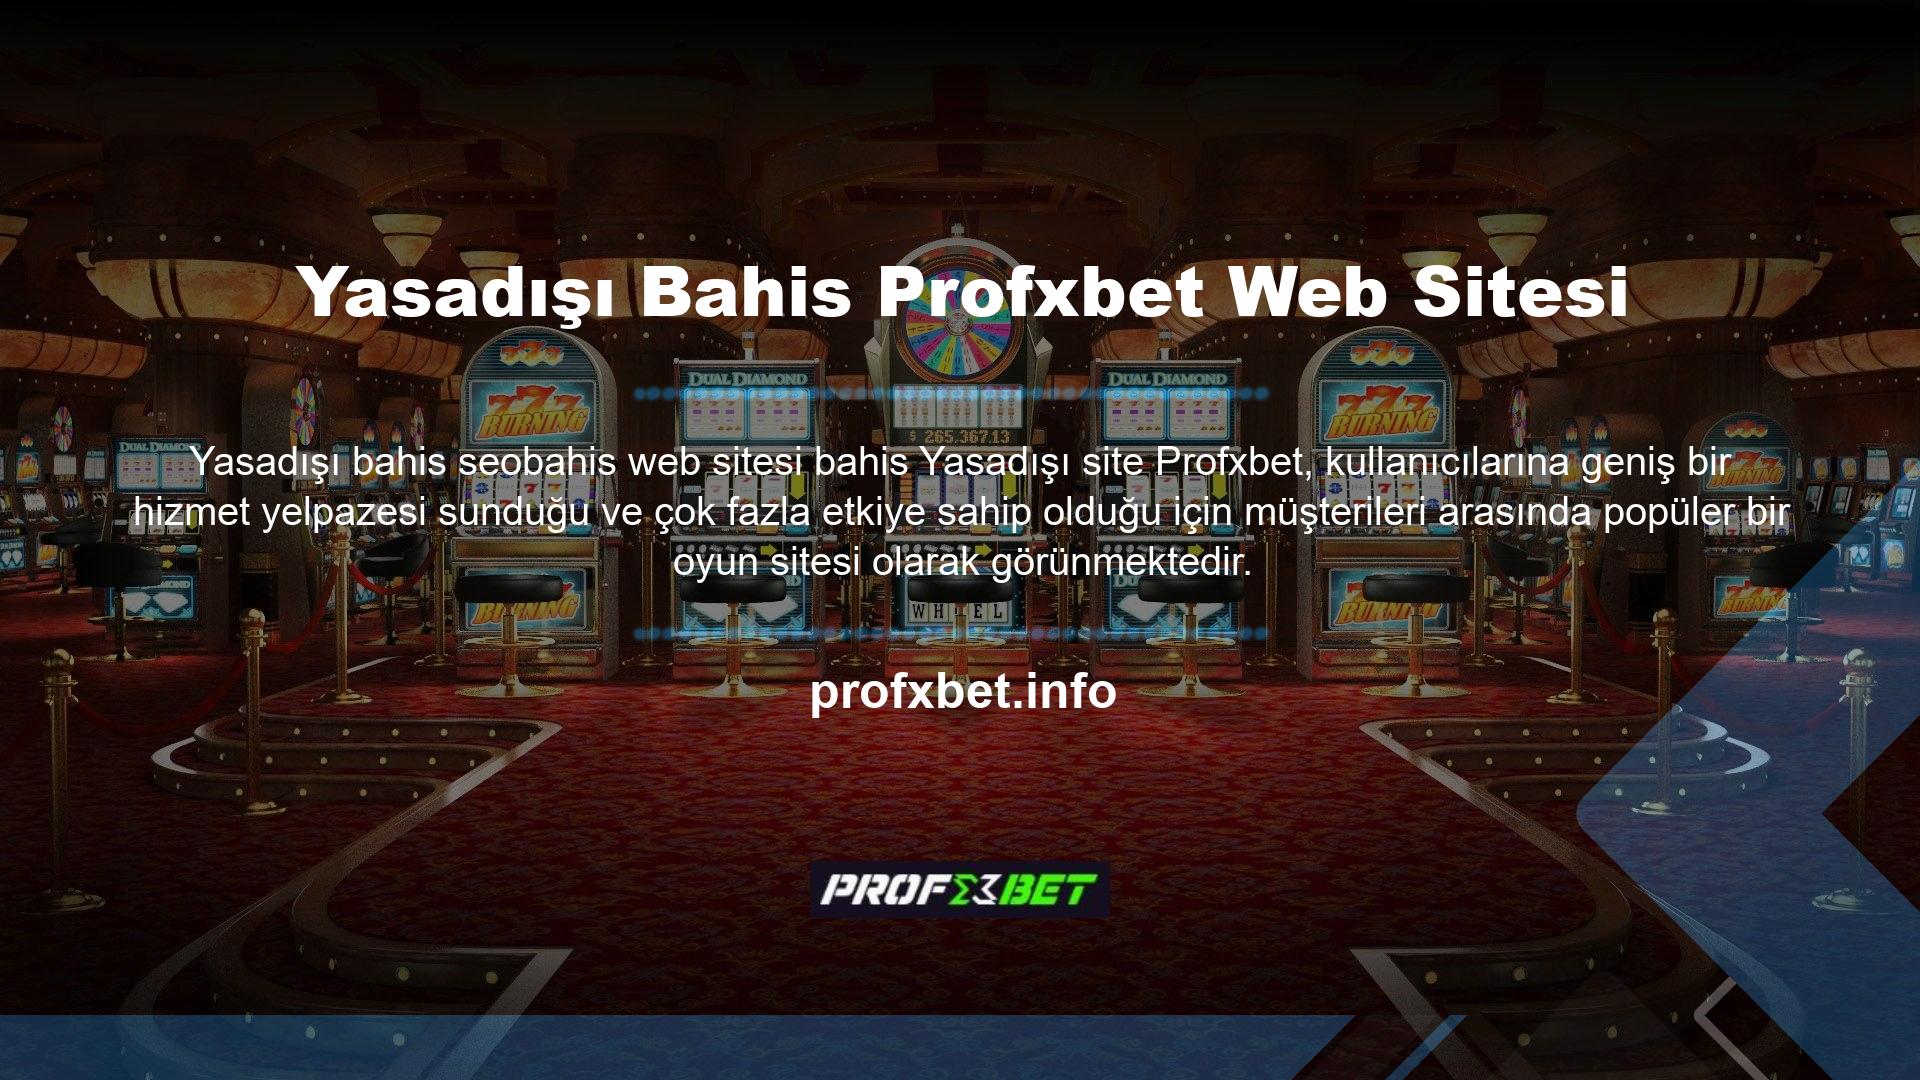 Casino sitesi, müşteri memnuniyetine sitedeki diğerlerinden daha fazla değer veren kullanıcılardan sert yorumlar almaz